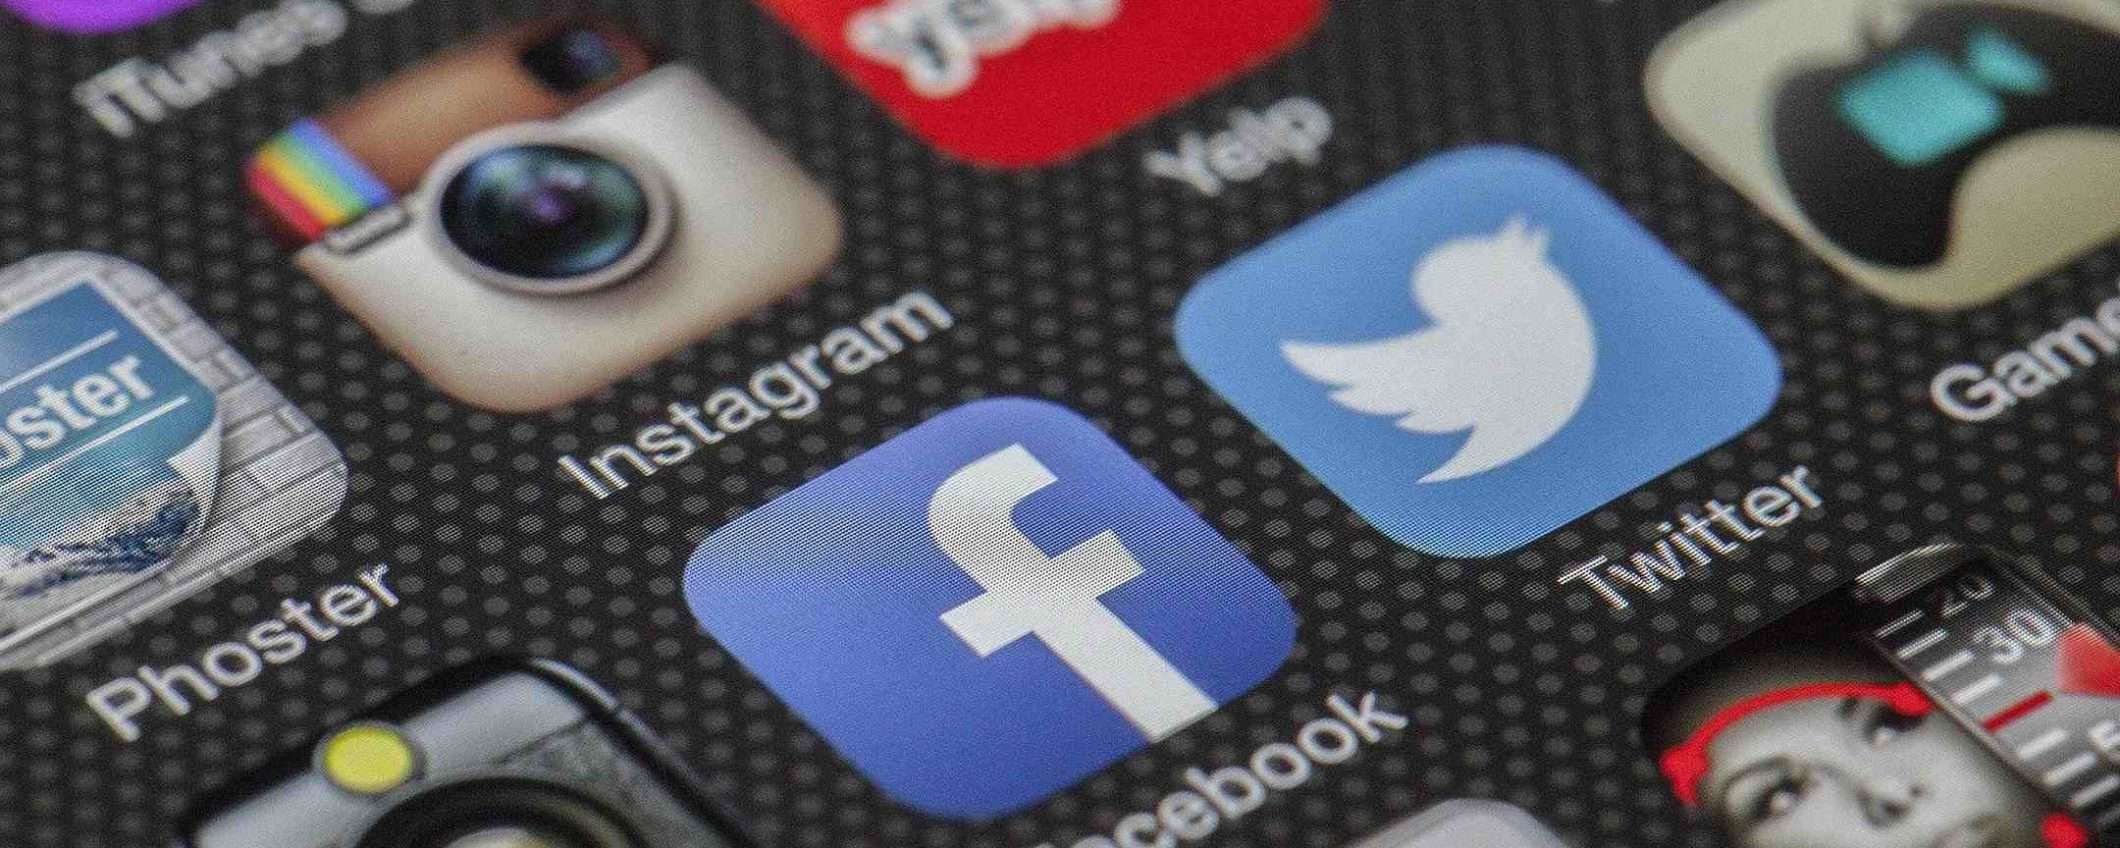 Garante Privacy apre fascicolo su Facebook e Instagram